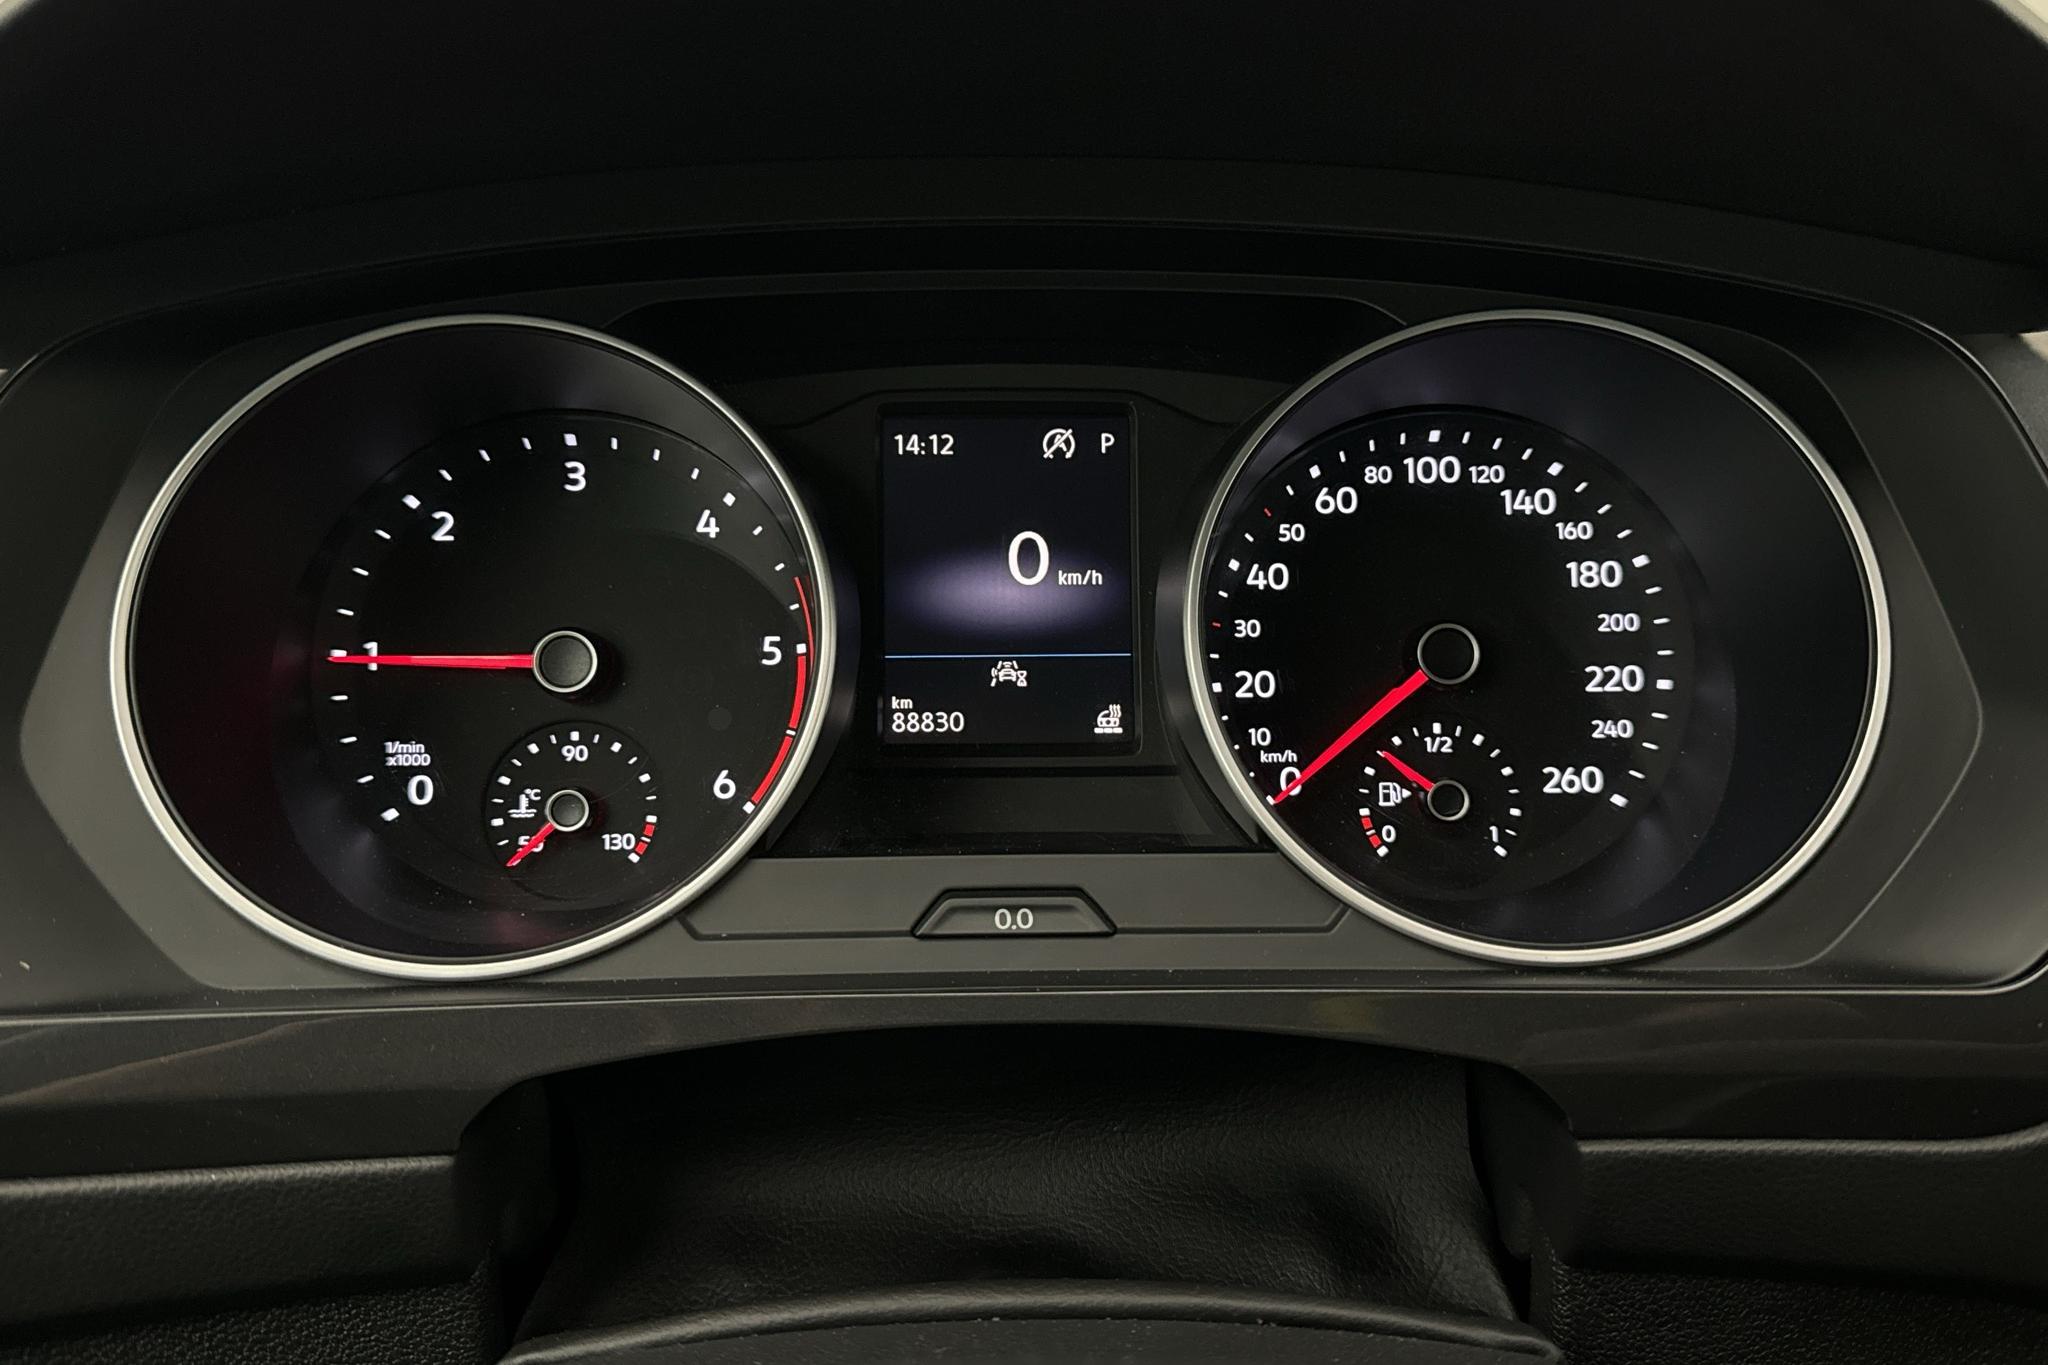 VW Tiguan 2.0 TDI 4MOTION (150hk) - 88 830 km - Automatic - white - 2021